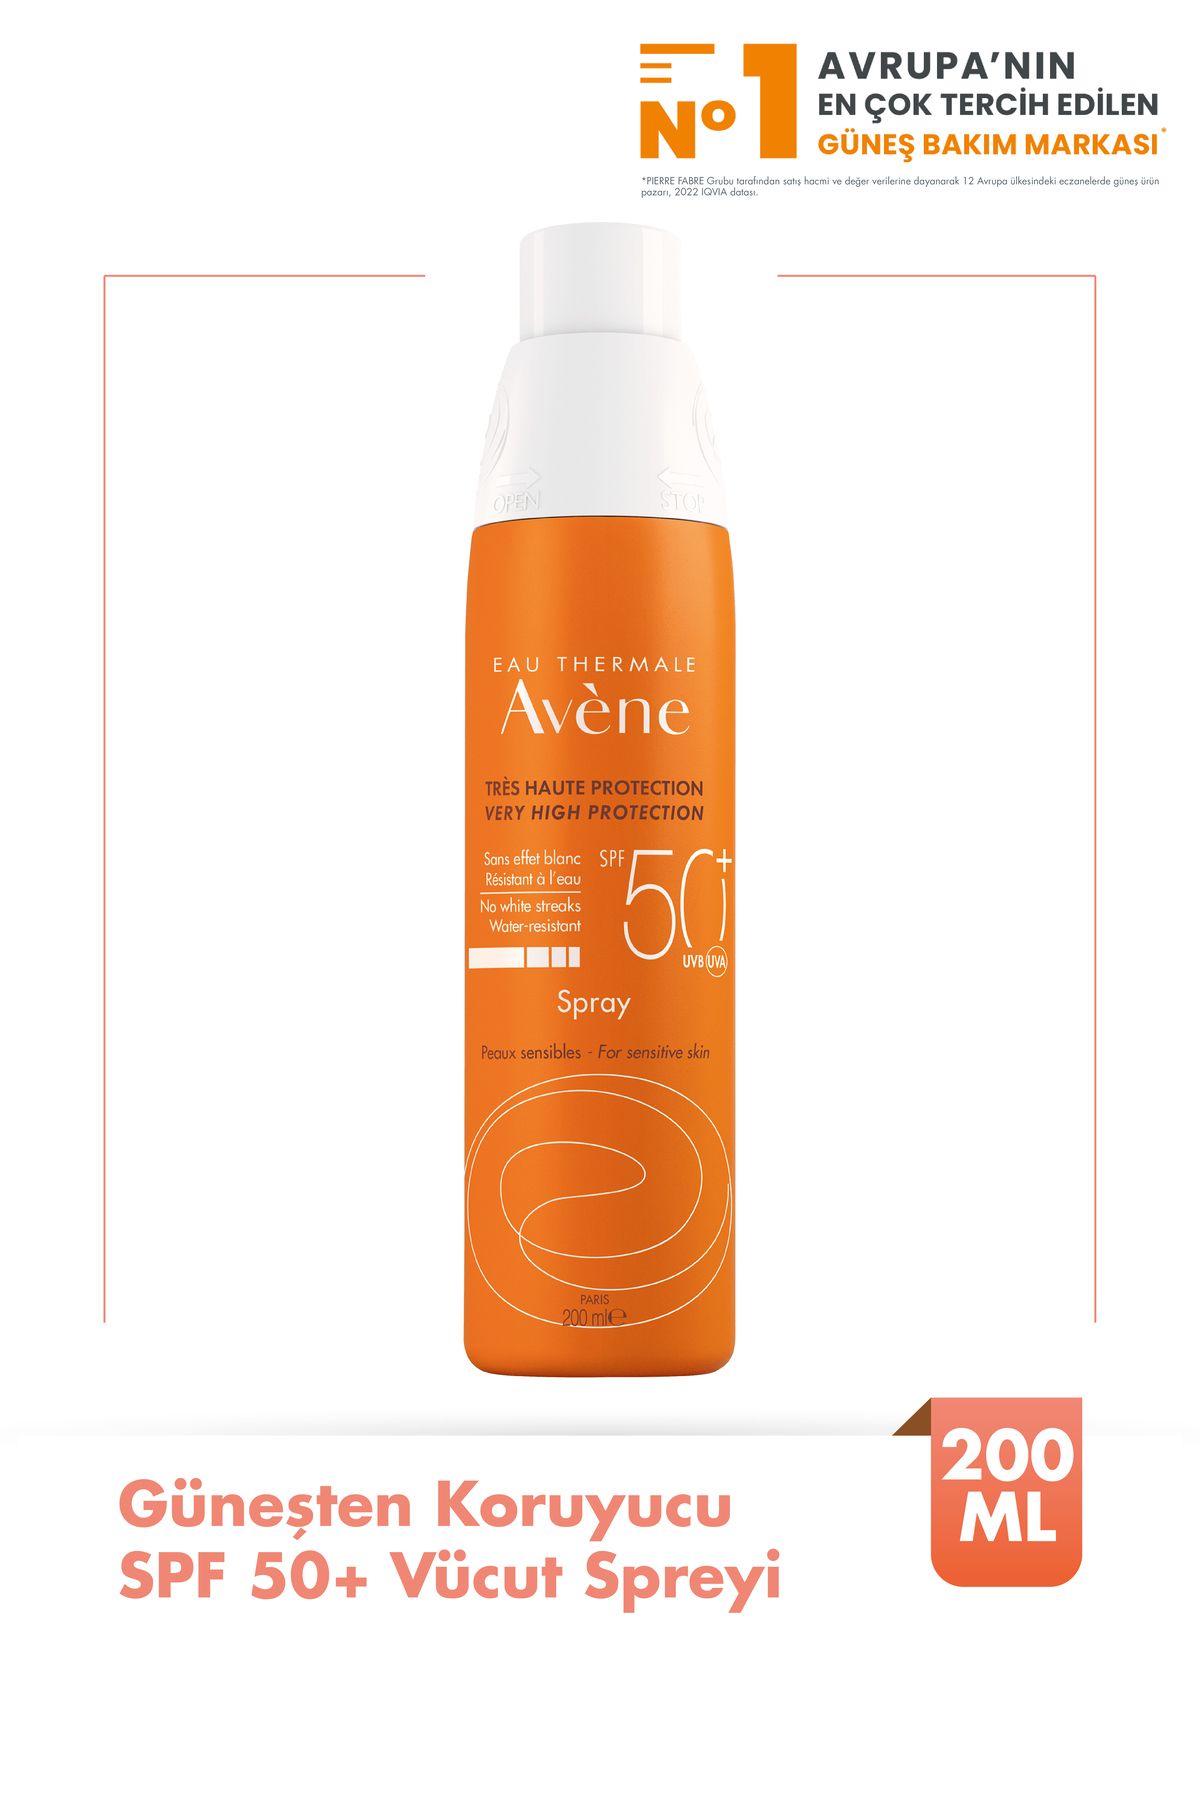 Avene Spray SPF 50+ Tüm Cilt Tipleri İçin Kullanıma Uygun Güneşten Koruyucu Vücut Spreyi 200 ml